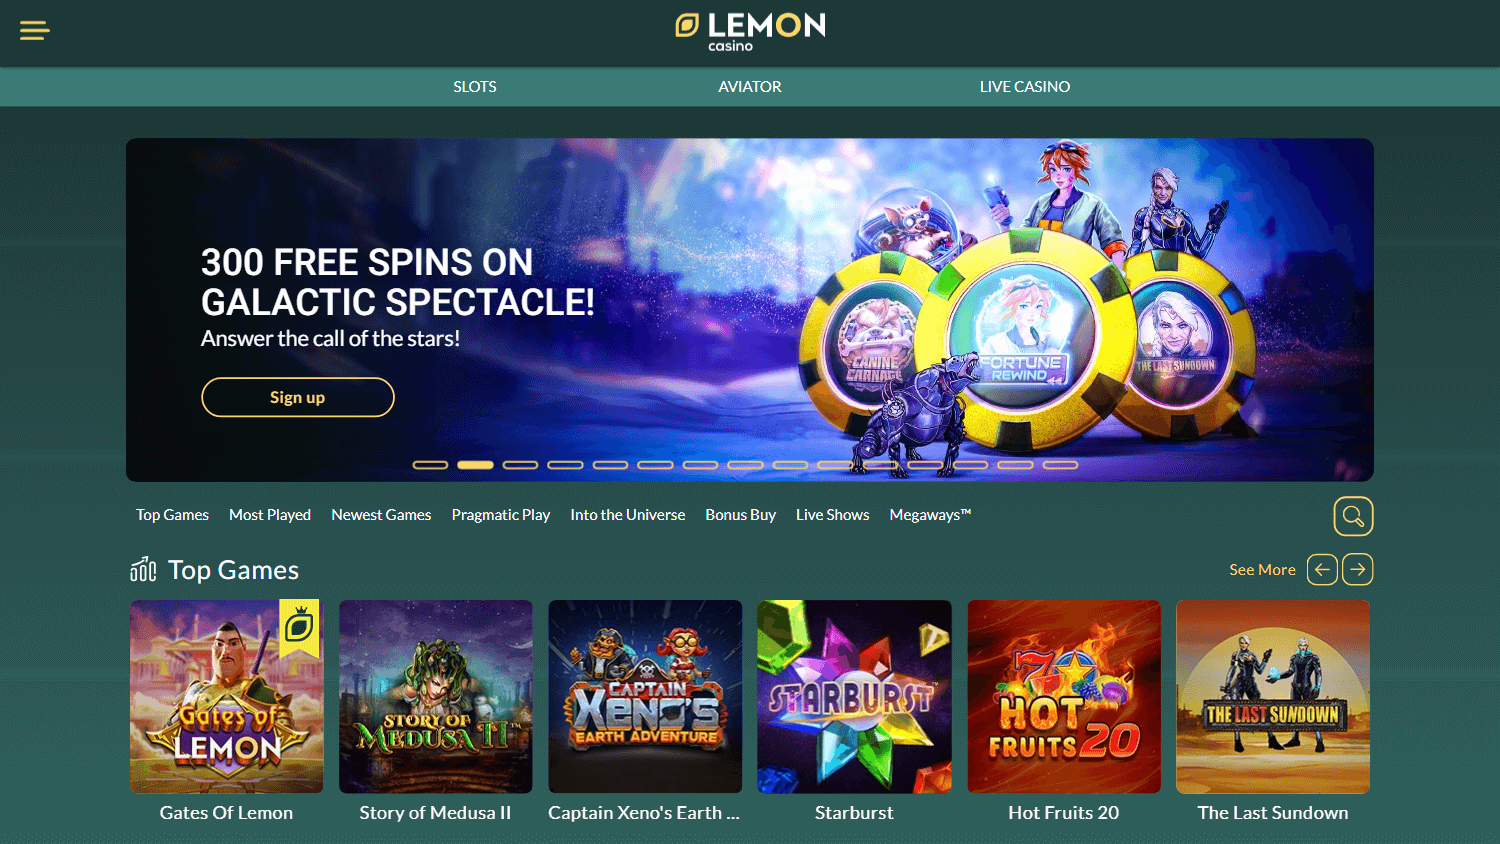 lemon_casino_homepage_desktop